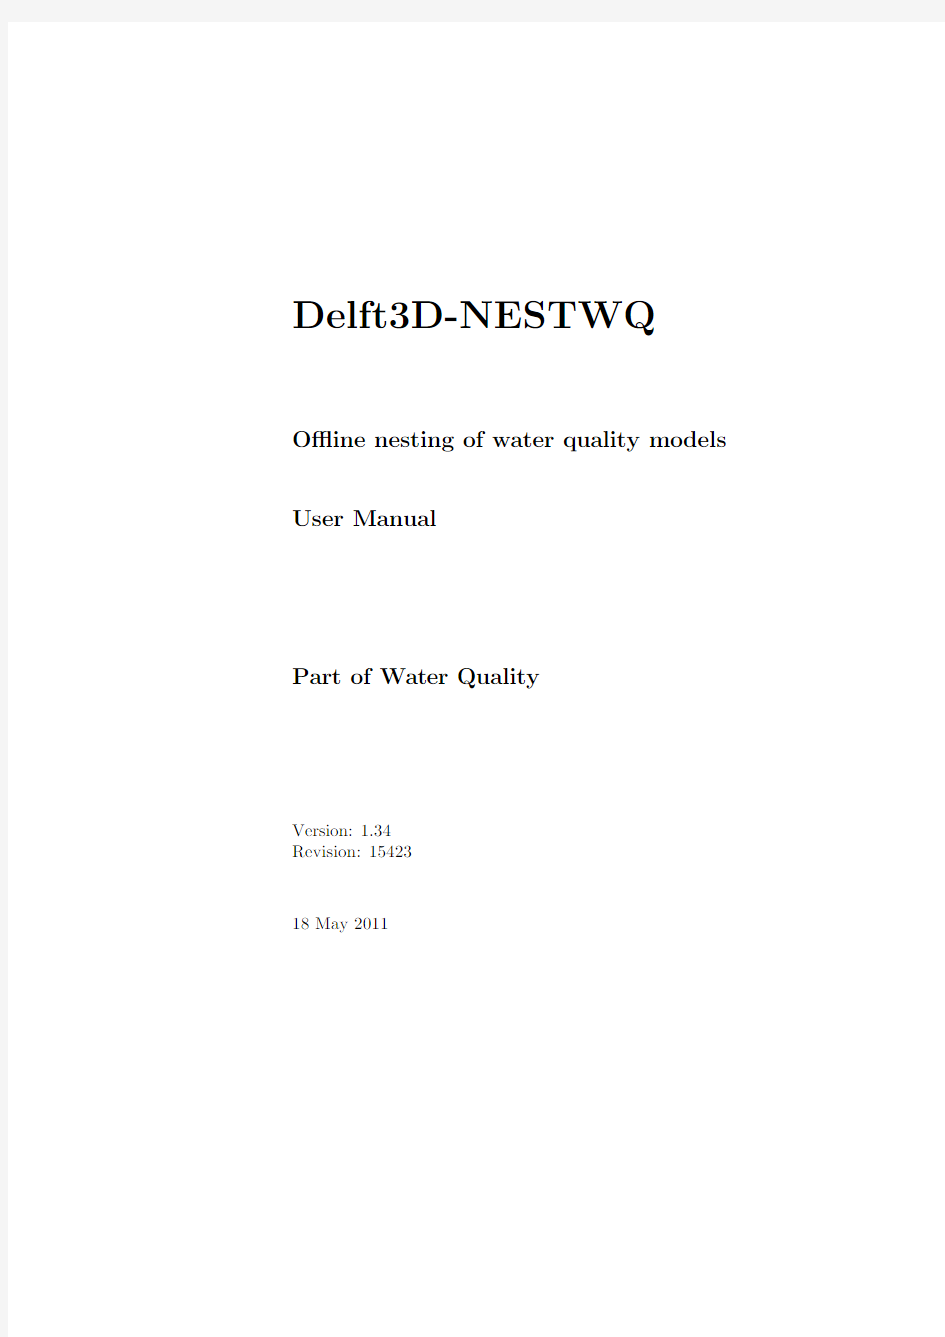 Delft3D-NESTWQ_User_Manual